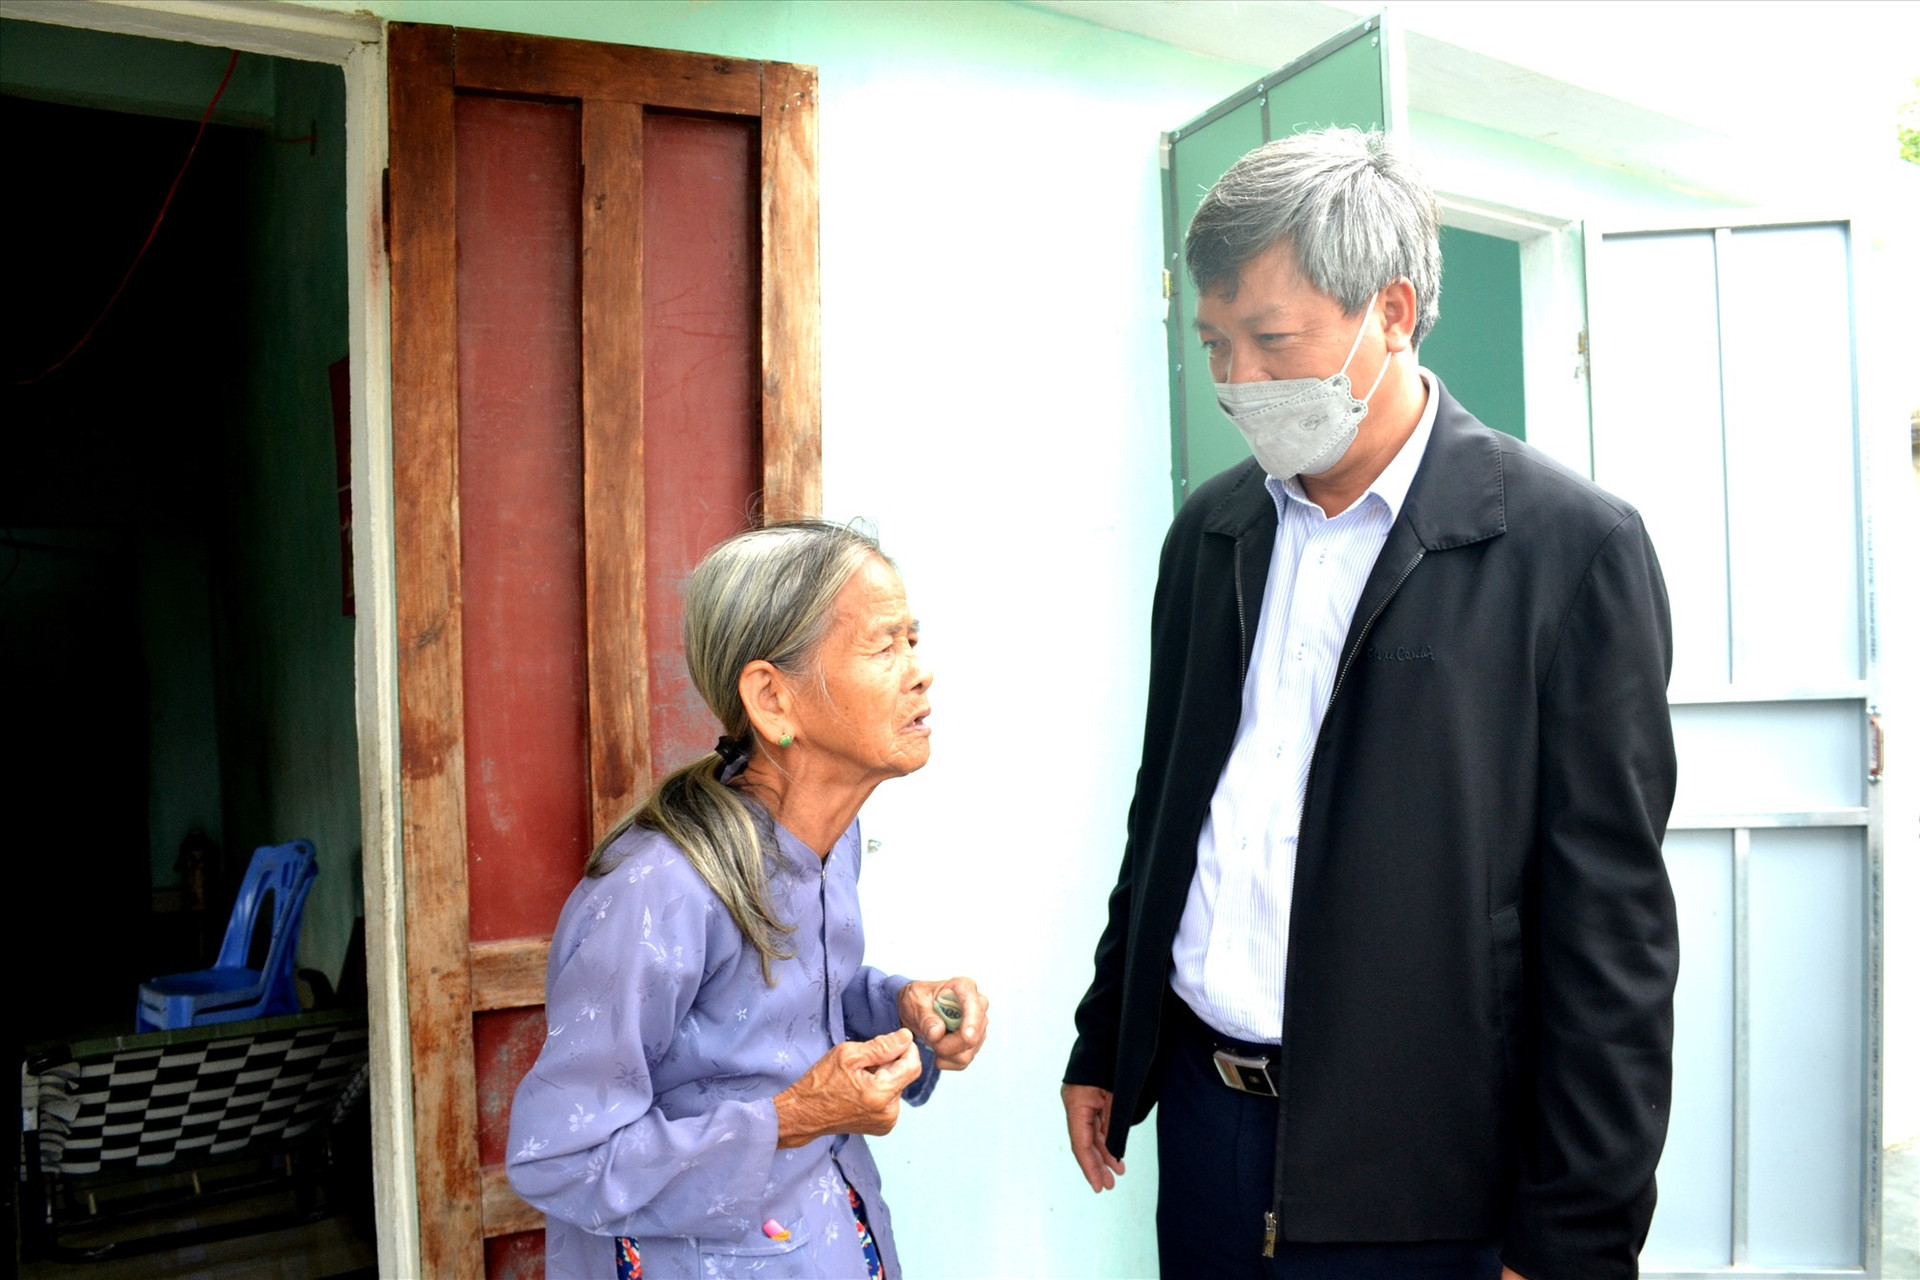 Phó Chủ tịch UBND tỉnh hỏi thăm, trao đổi ân cần với bà Nguyễn Thị Diếu. Ảnh: Q.VIỆT